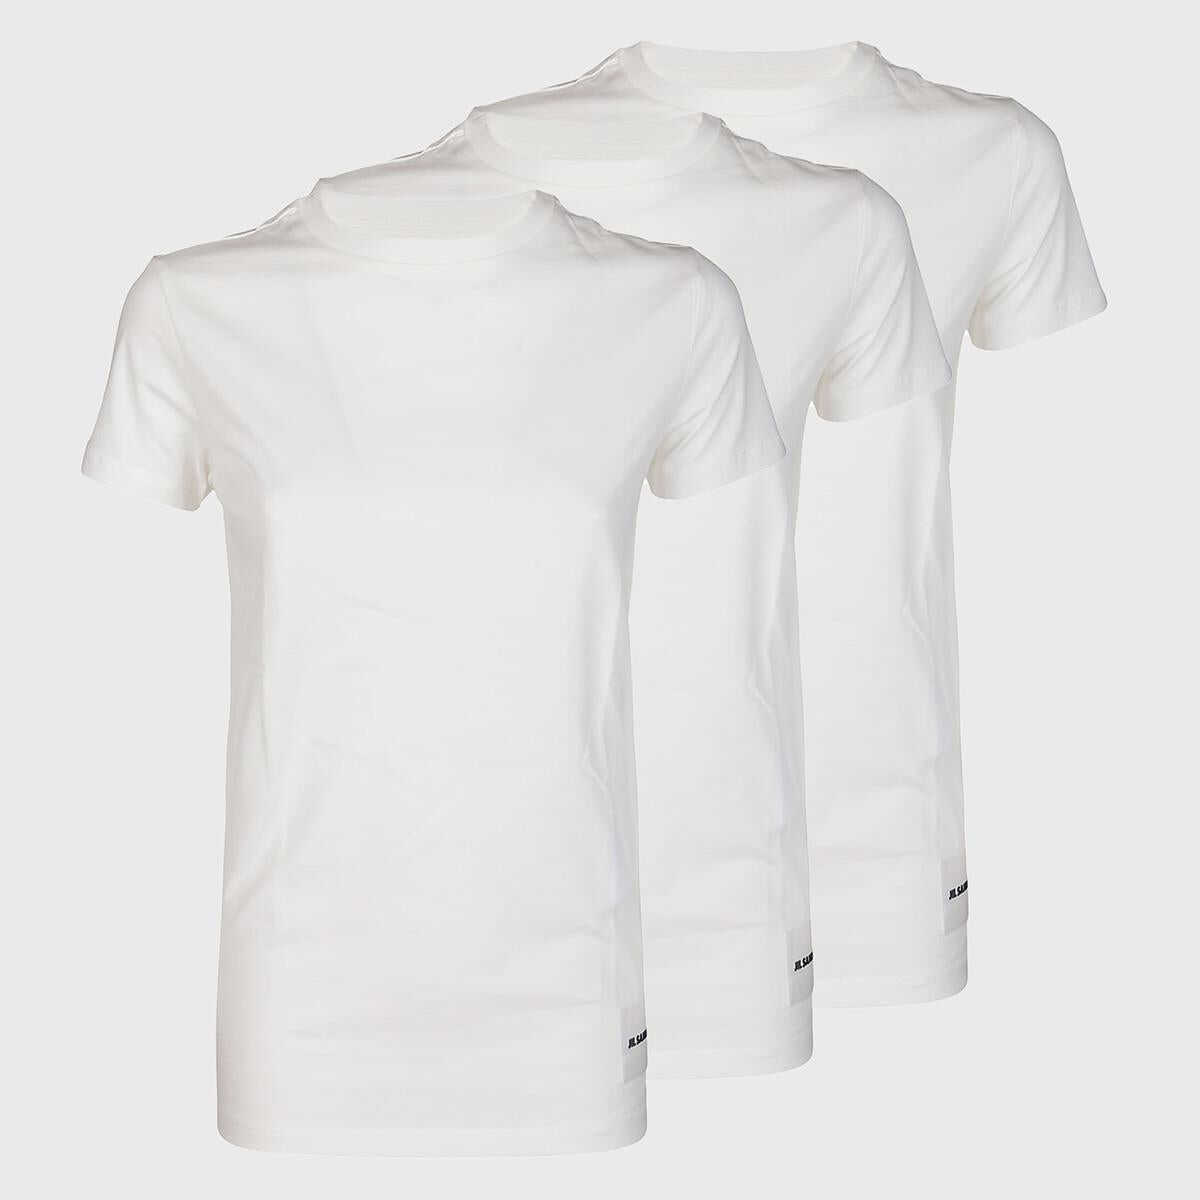 Poze Jil Sander Jil Sander T-shirt e Polo Bianco WHITE b-mall.ro 